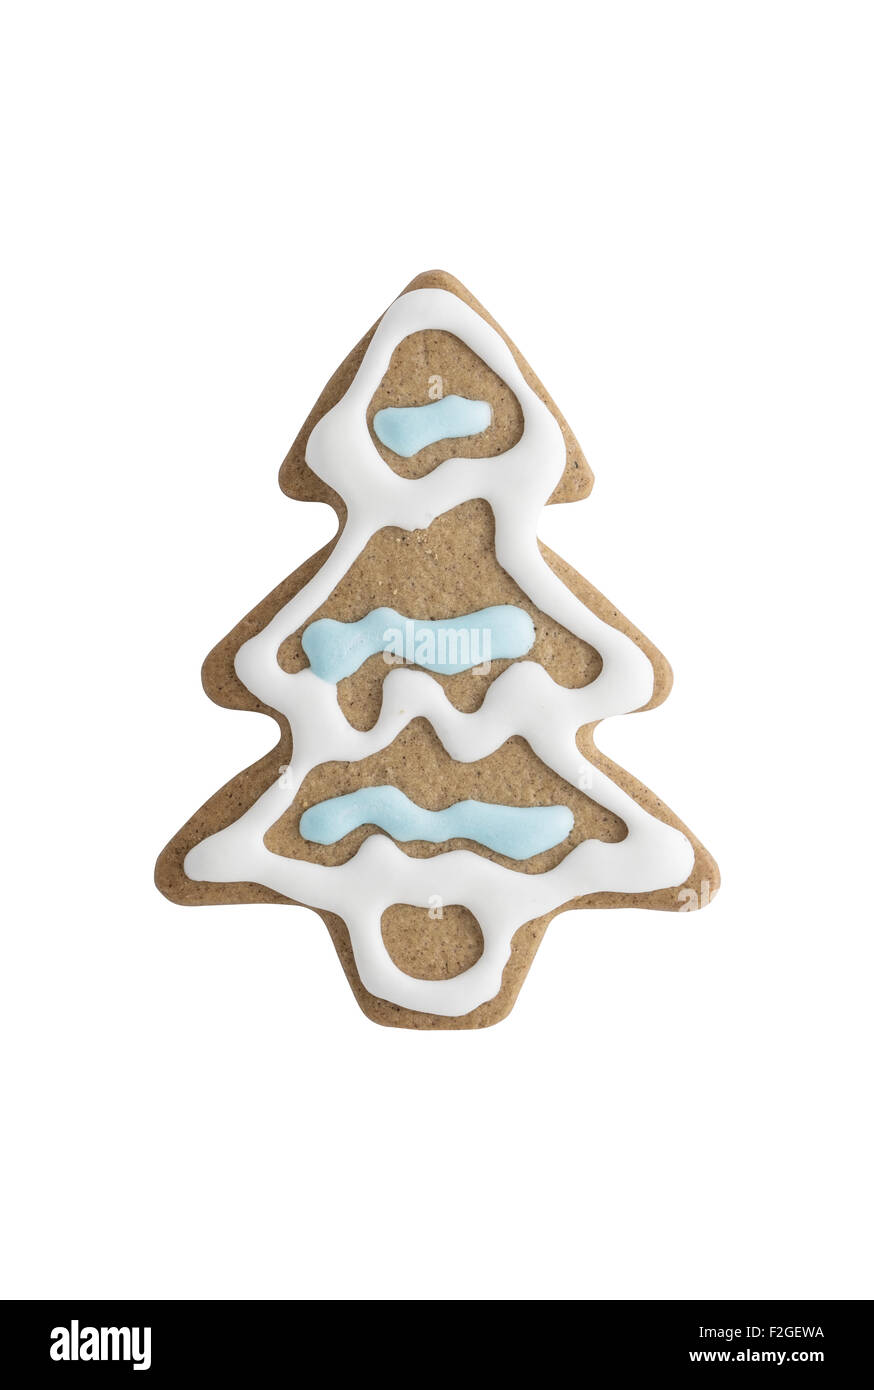 Gingerbread cookie albero di natale isolato su sfondo bianco - girato in studio Foto Stock